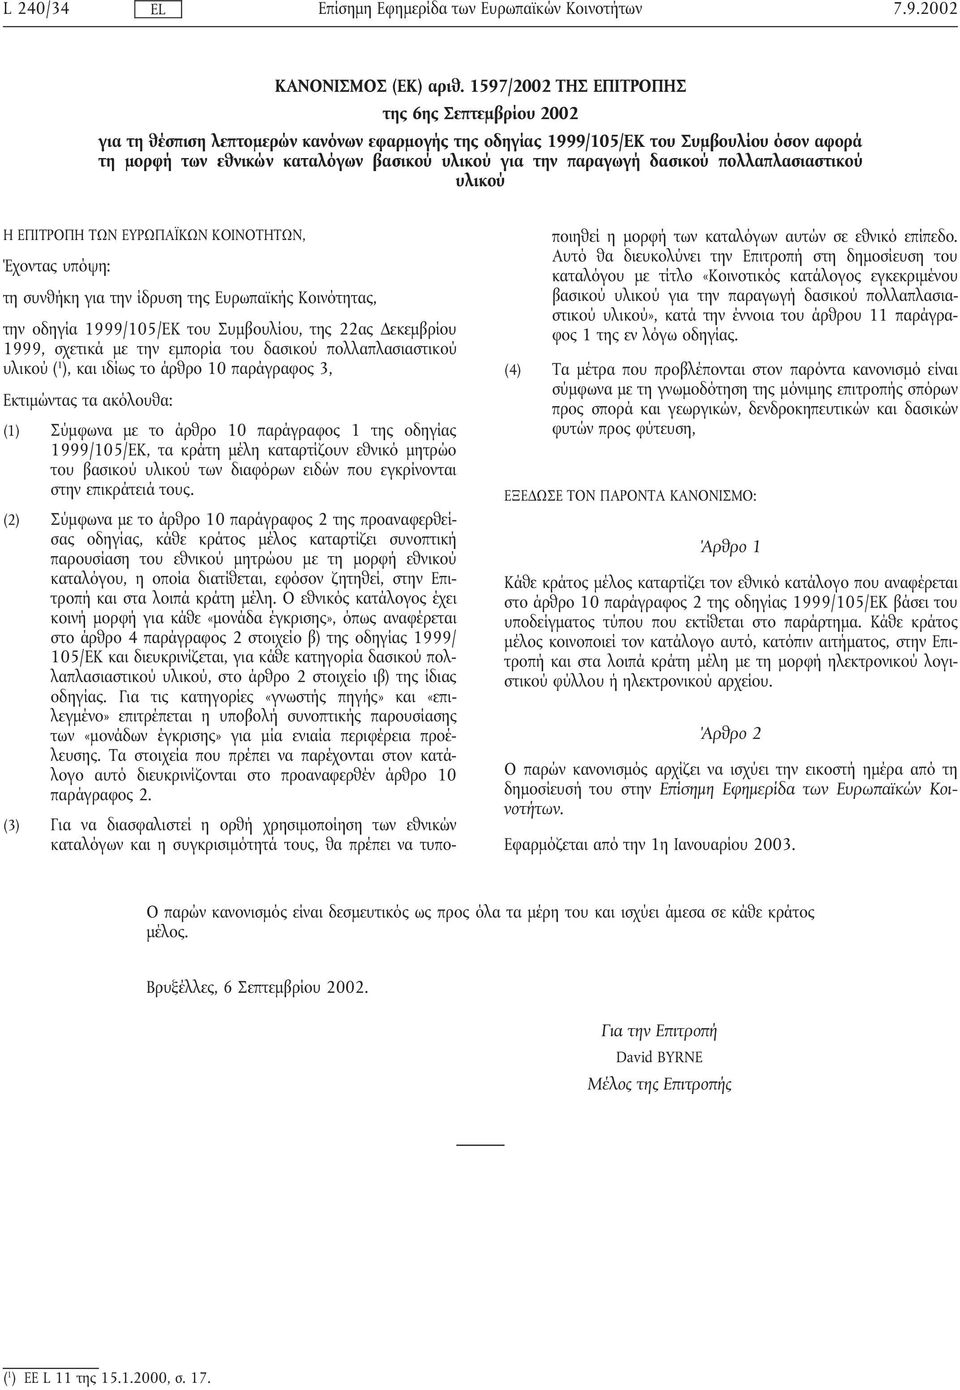 τηνπαραγωγή δασικού πολλαπλασιαστικού υλικού Η ΕΠΙΤΡΟΠΗ ΤΩΝ ΕΥΡΩΠΑΪΚΩΝ ΚΟΙΝΟΤΗΤΩΝ, Έχοντας υπόψη: τη συνθήκη για την ίδρυση της Ευρωπαϊκής Κοινότητας, την οδηγία 1999/105/EΚ του Συµβουλίου, της 22ας